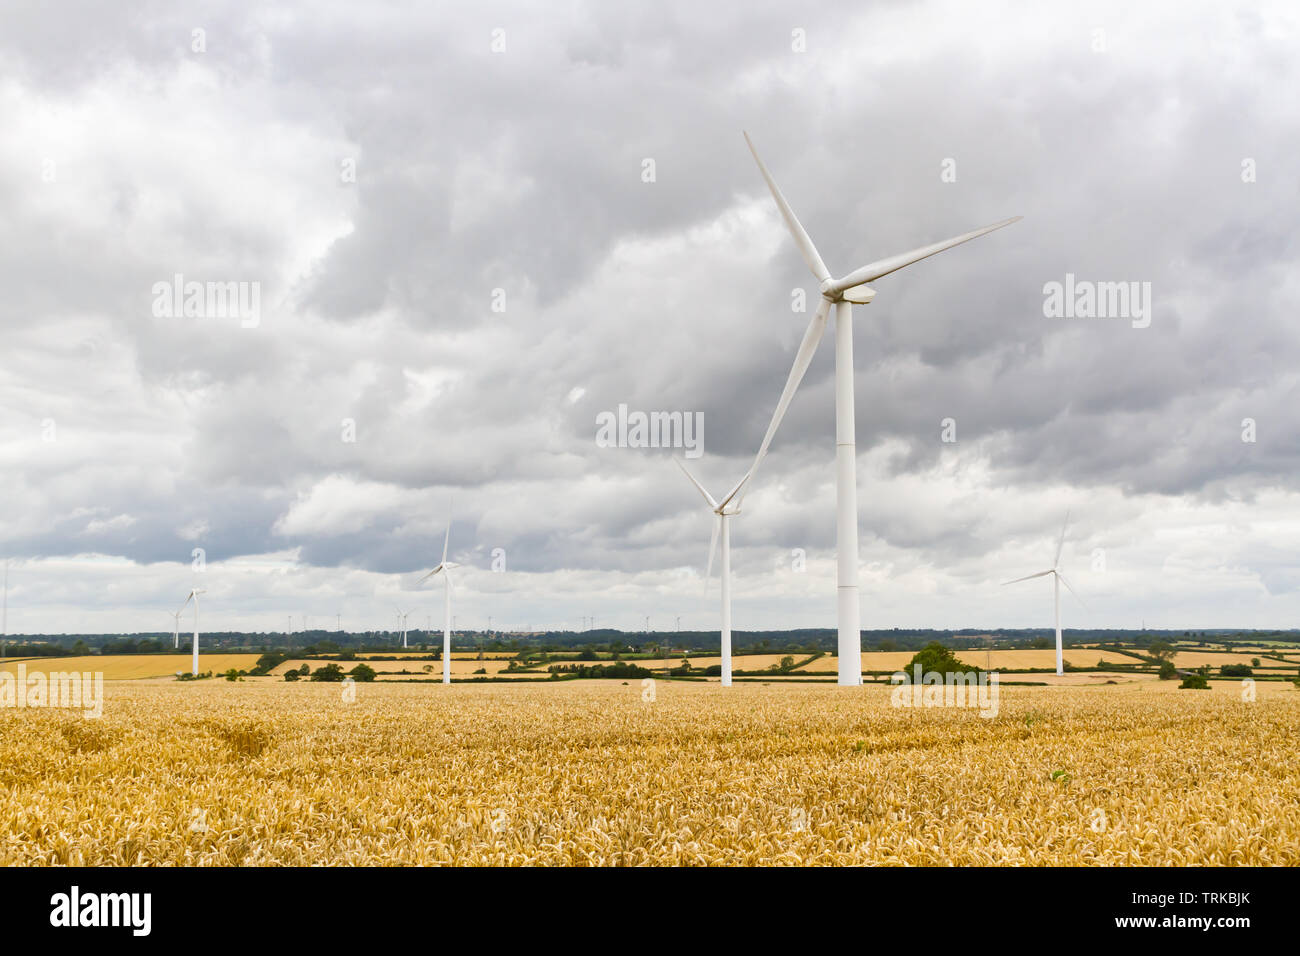 Crick, Northamptonshire, Großbritannien: Fünf Windkraftanlagen stehen in einem Feld reifen, gelben Weizens unter einem Himmel aus dicken grauen Wolken. Stockfoto